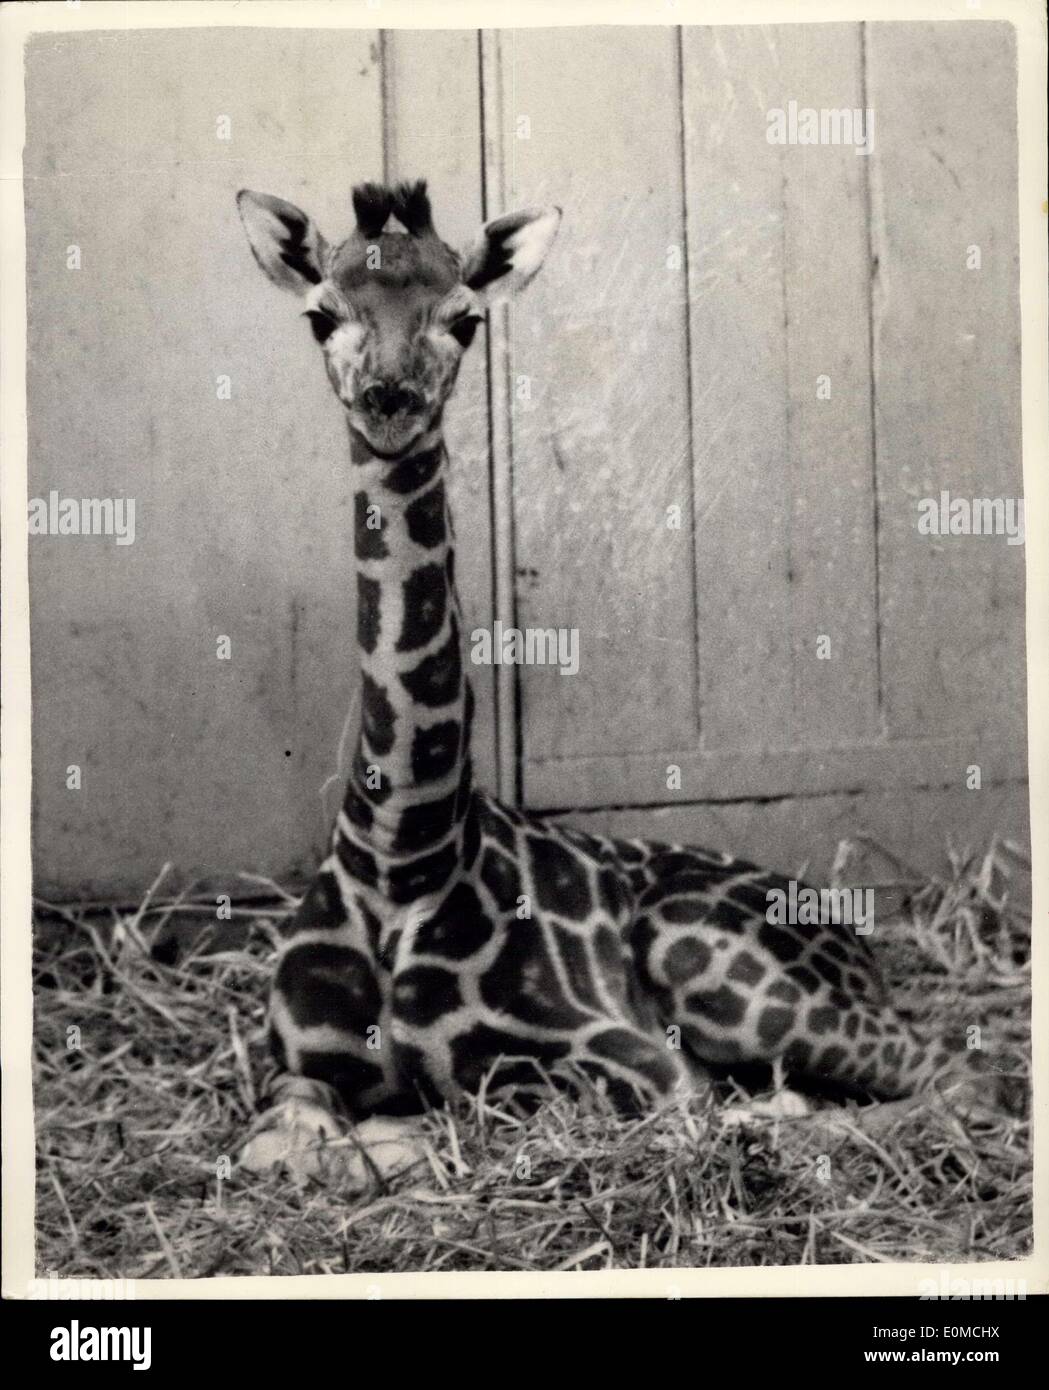 Sept. 29, 1954 - Zoo Nachwuchs. Chris - die Giraffe: Wochen alte Nachwuchs von den Londoner Zoo Giraffen, Maud und Monty - '' Chris'' benannt wurde. Das Foto zeigt Baby-Giraffe - Chris - heute im London Zoo fotografiert. Stockfoto